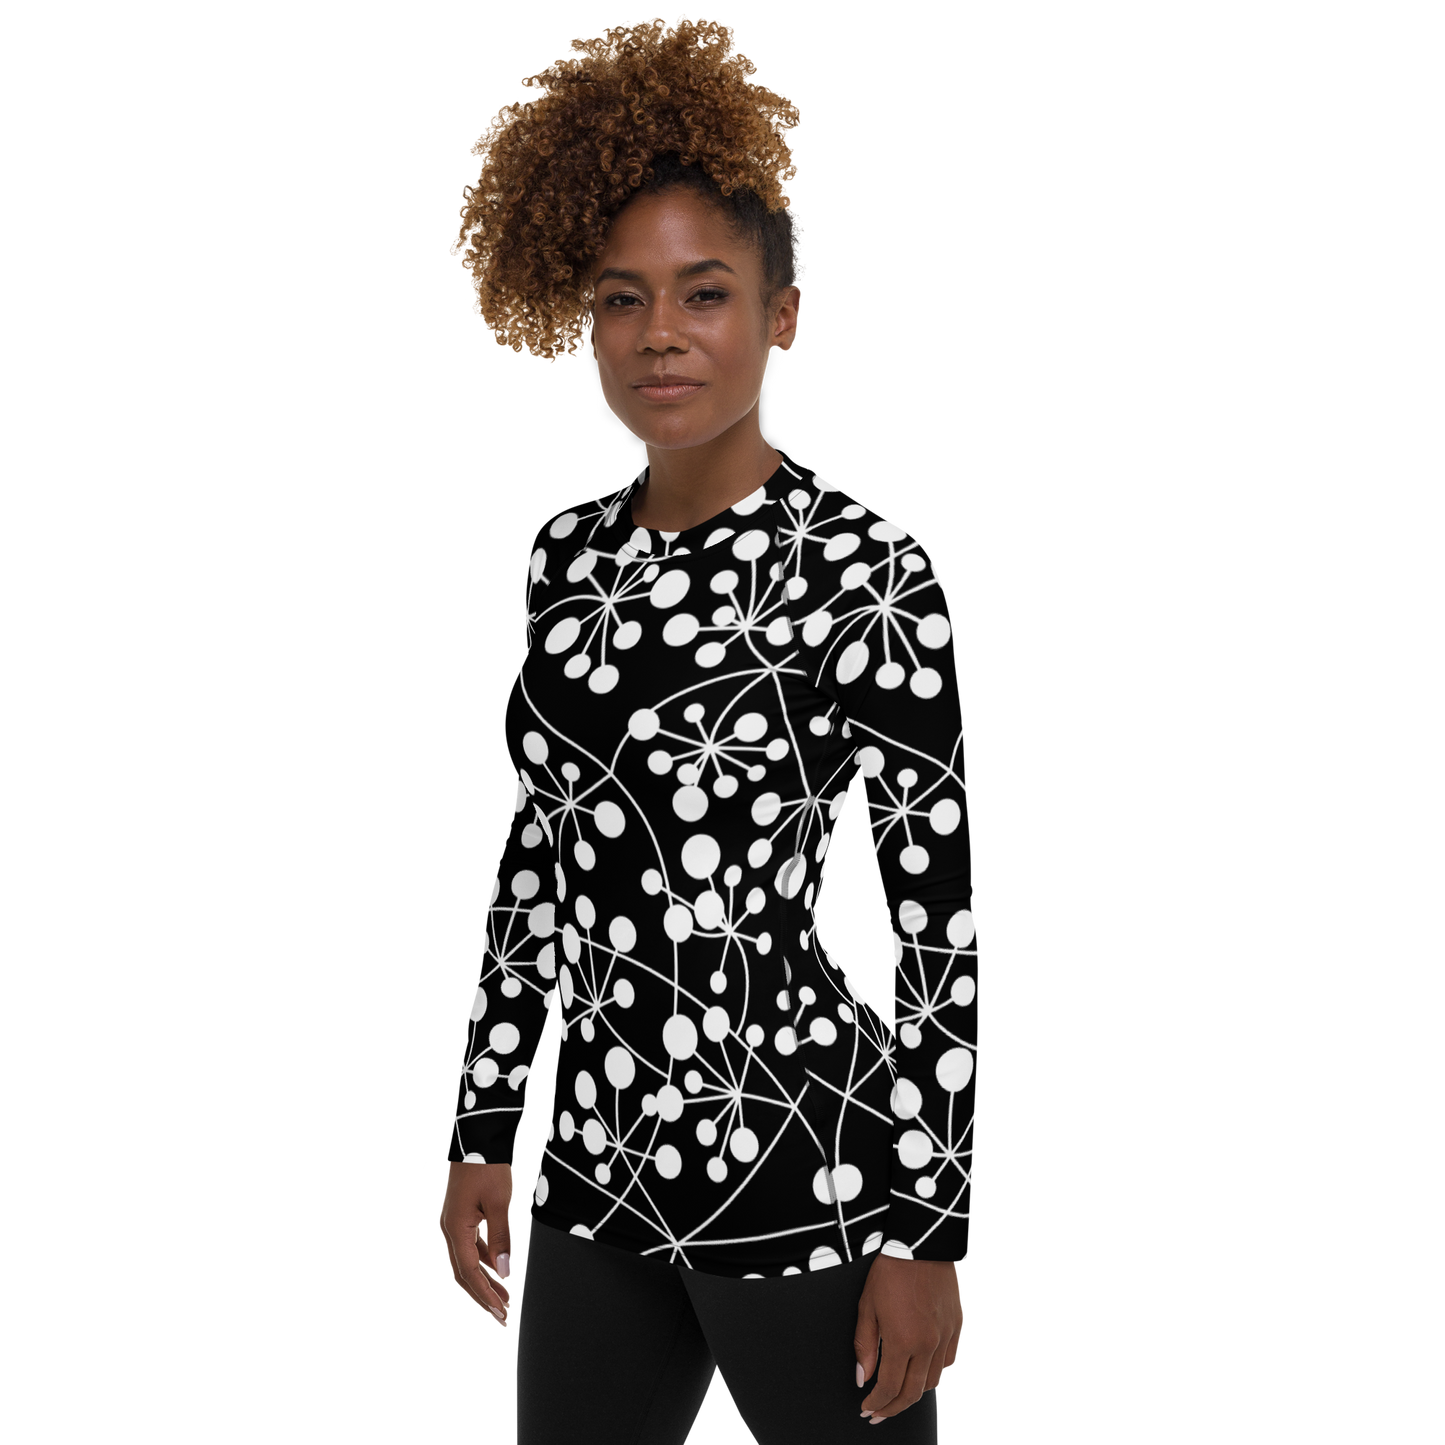 T-shirt de compression pour femme ❯ Arboricool ❯ Blanc sur noir